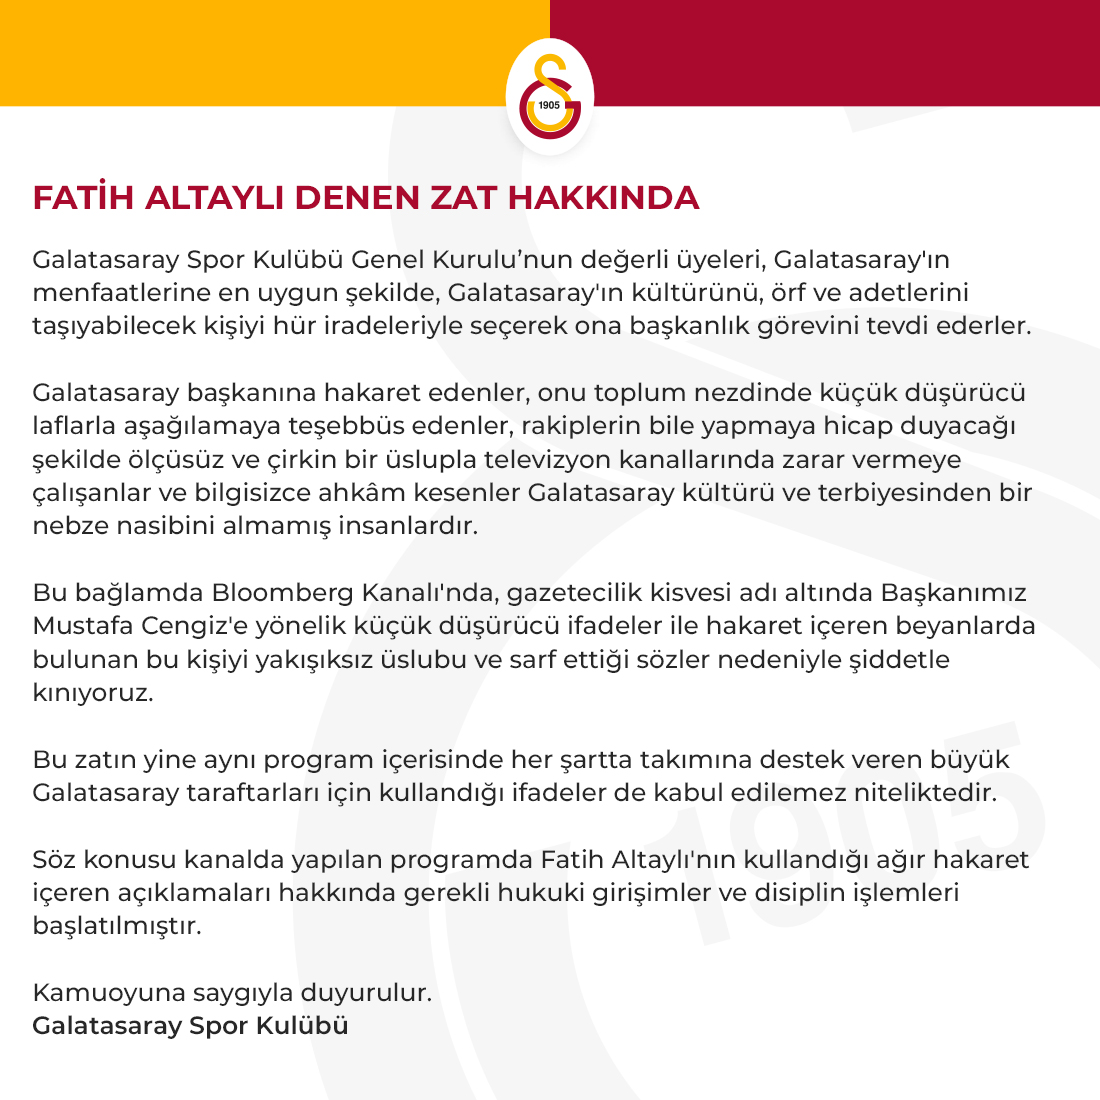 Galatasaray'dan Fatih Altaylı açıklaması: "Fatih Altaylı denen zat!"